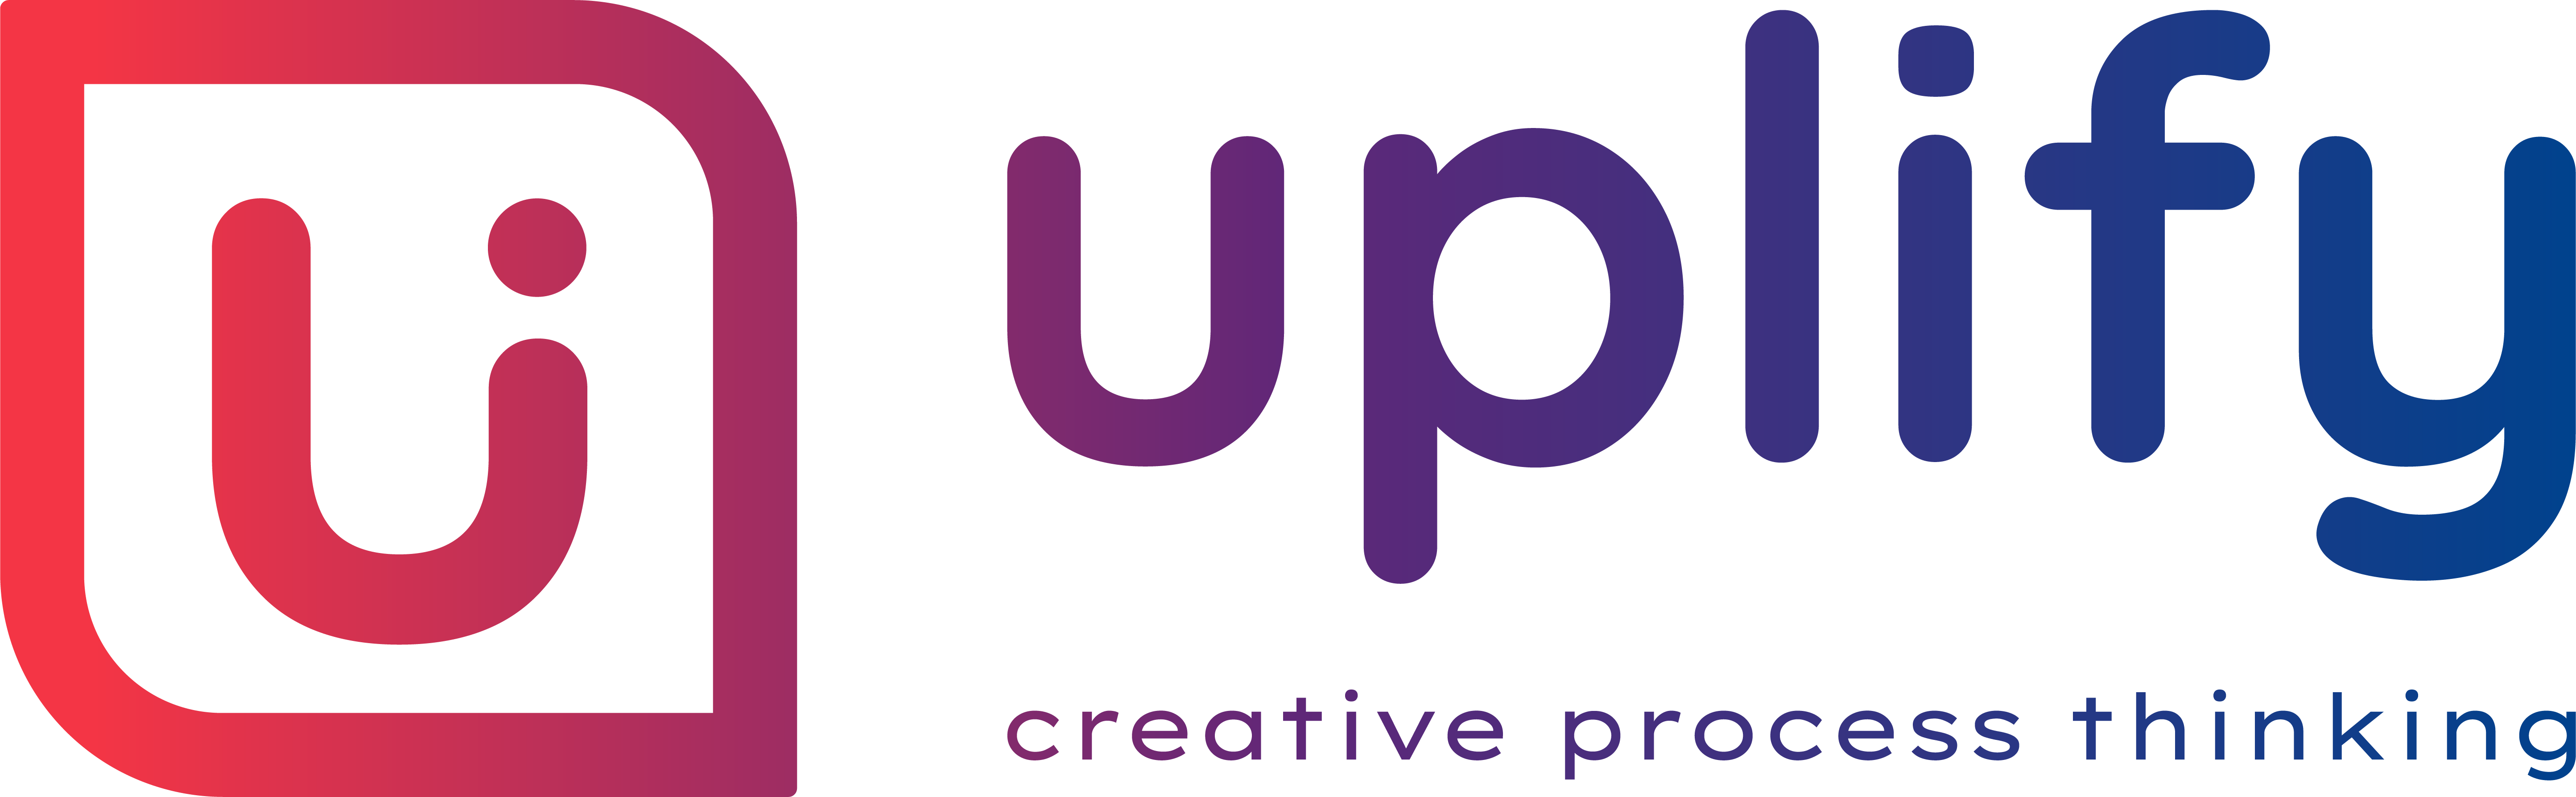 uplify_new_logo23